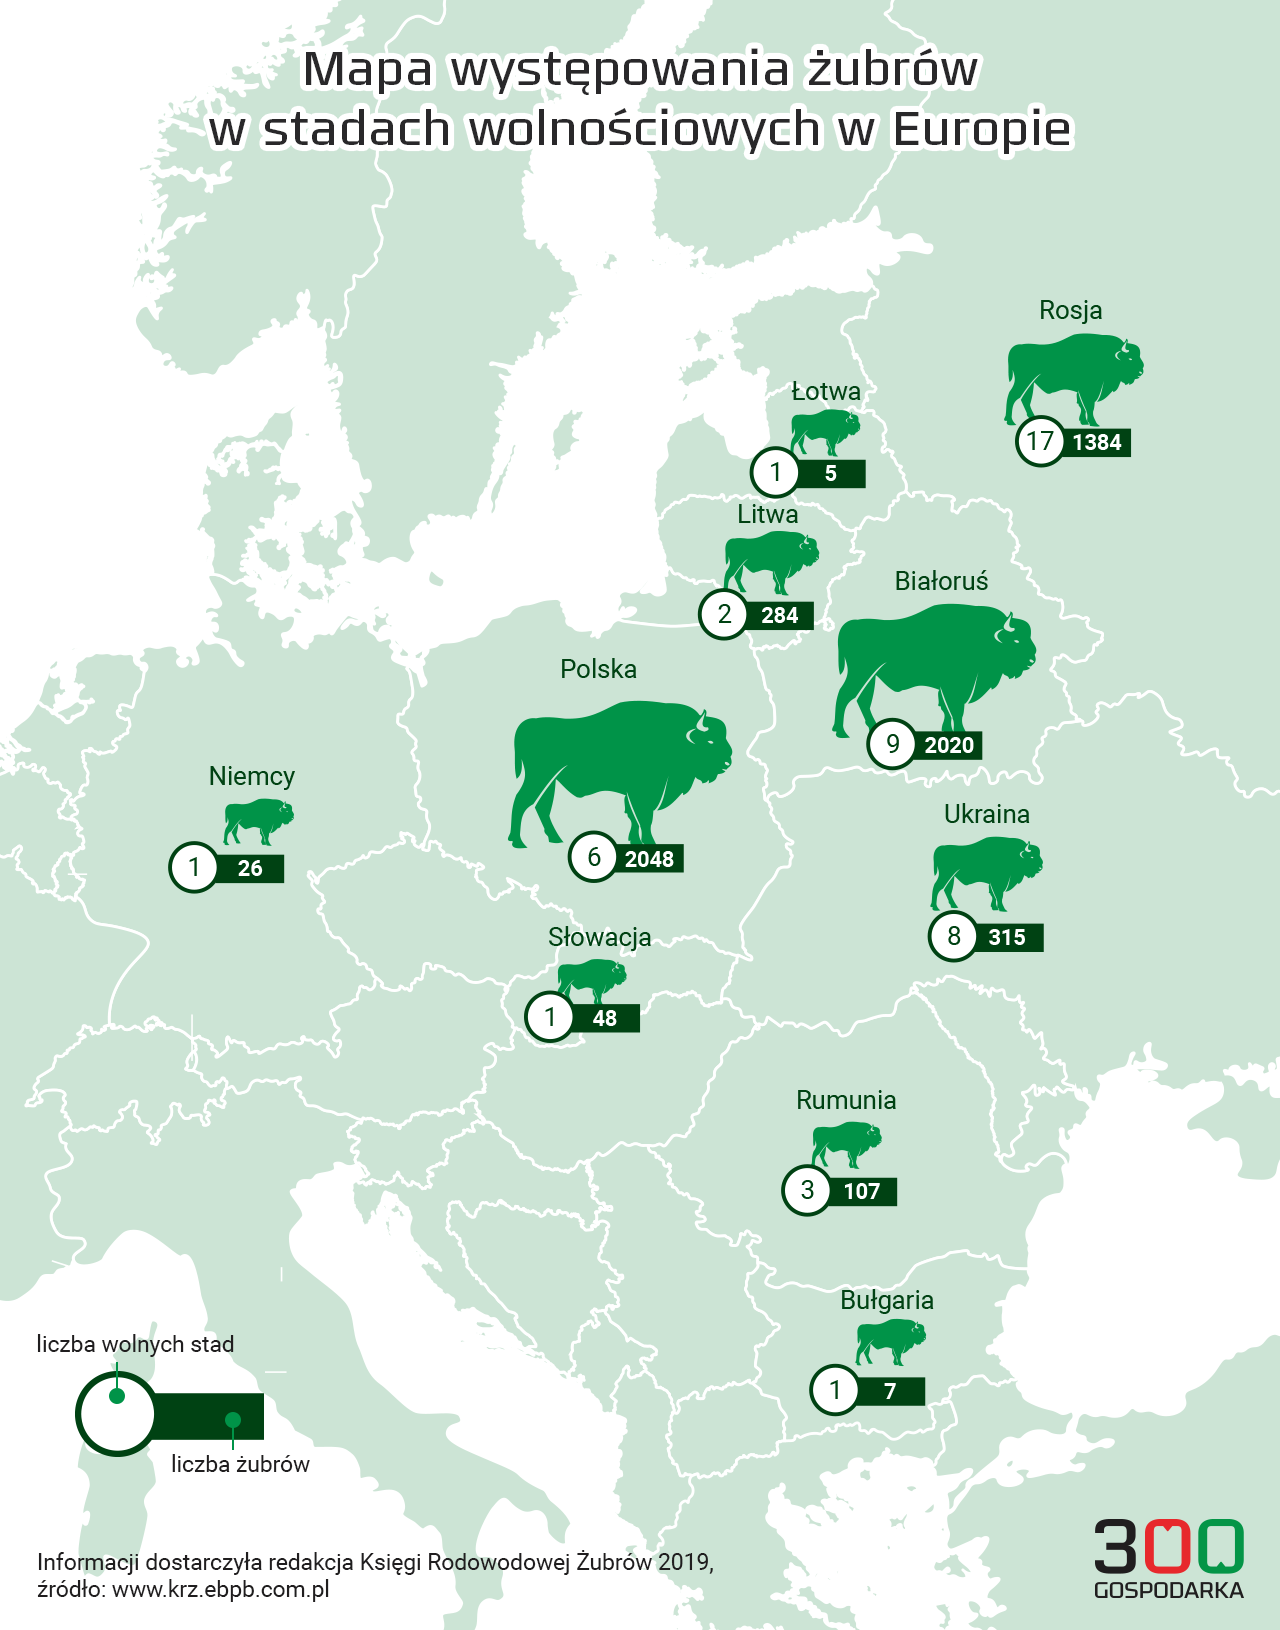 Mapa występowania żubrów w stadach wolnościowych w Europie, źródło: Księga Rodowodowa Żubrów 2019, grafika: 300Gospodarka.